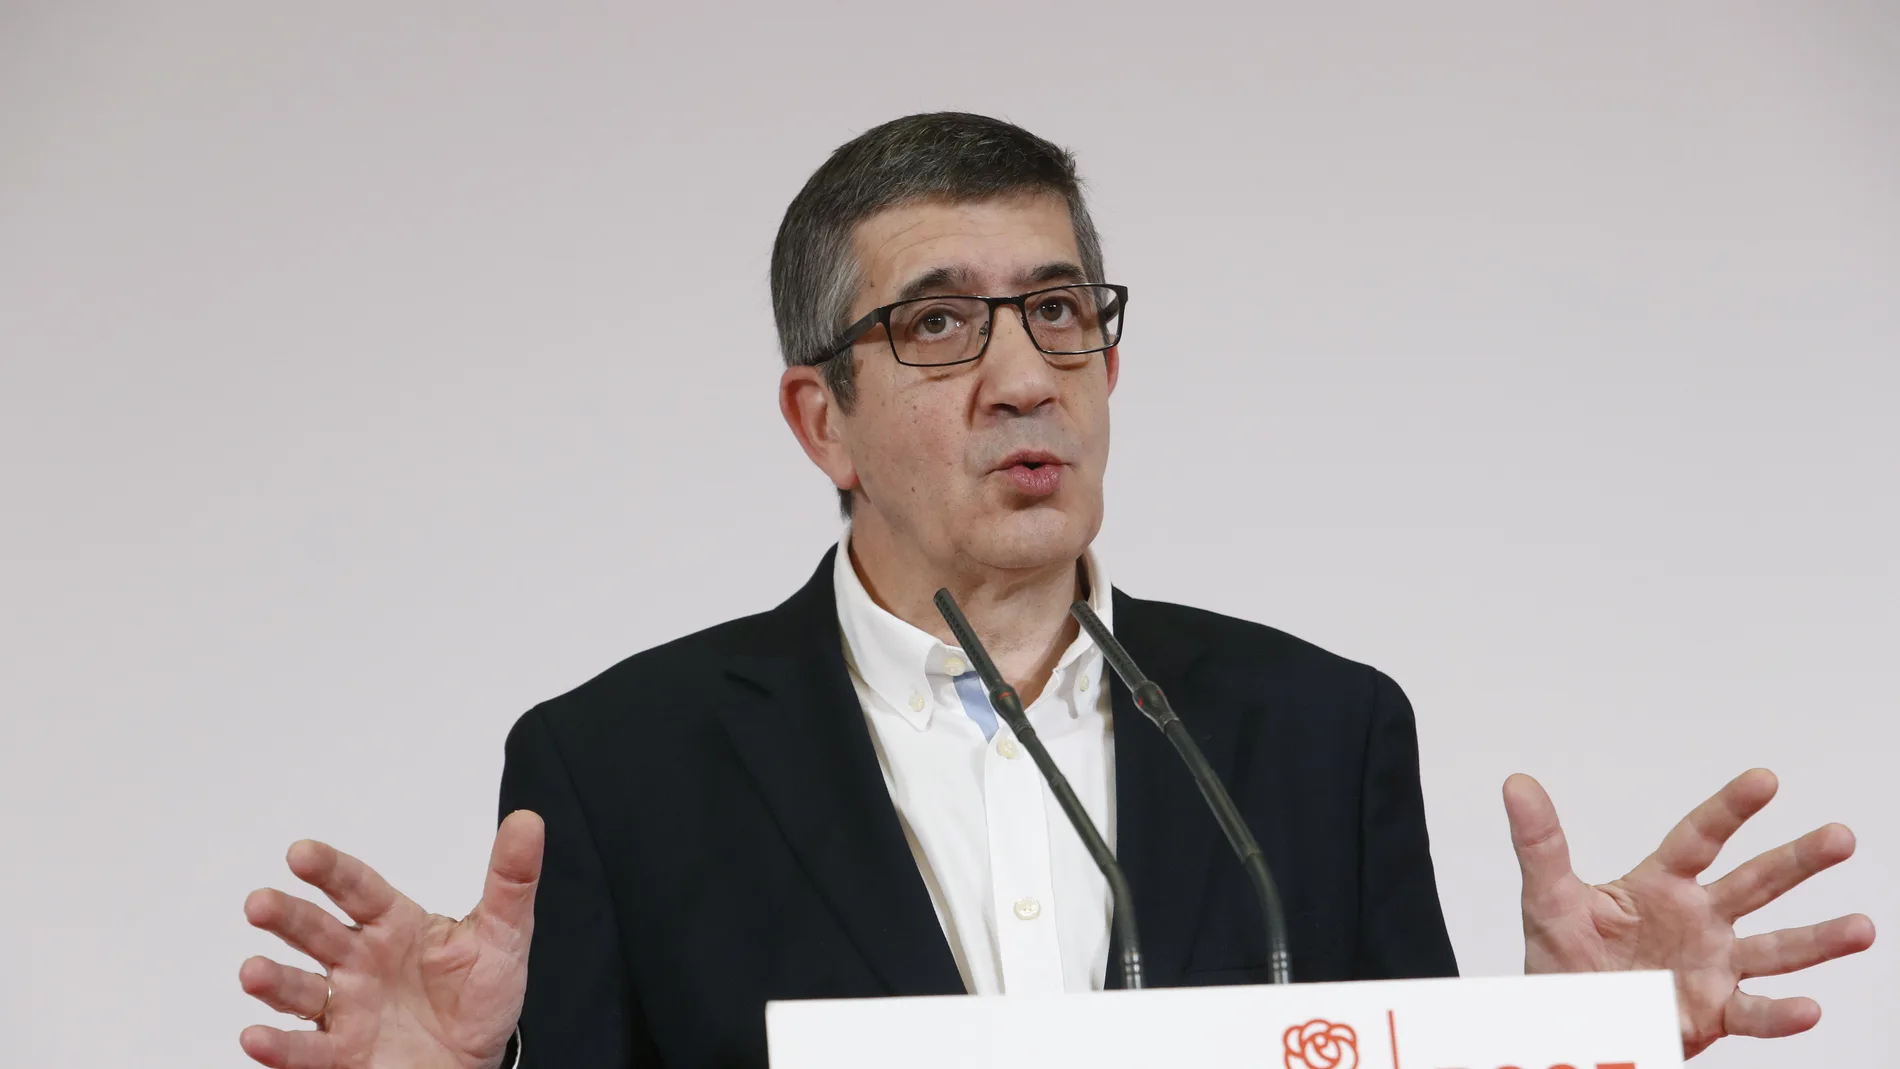 El diputado socialista Patxi López, durante la rueda de prensa que ha ofrecido hoy para anunciar su decisión de presentarse como candidato a las primarias para secretario general del PSOE